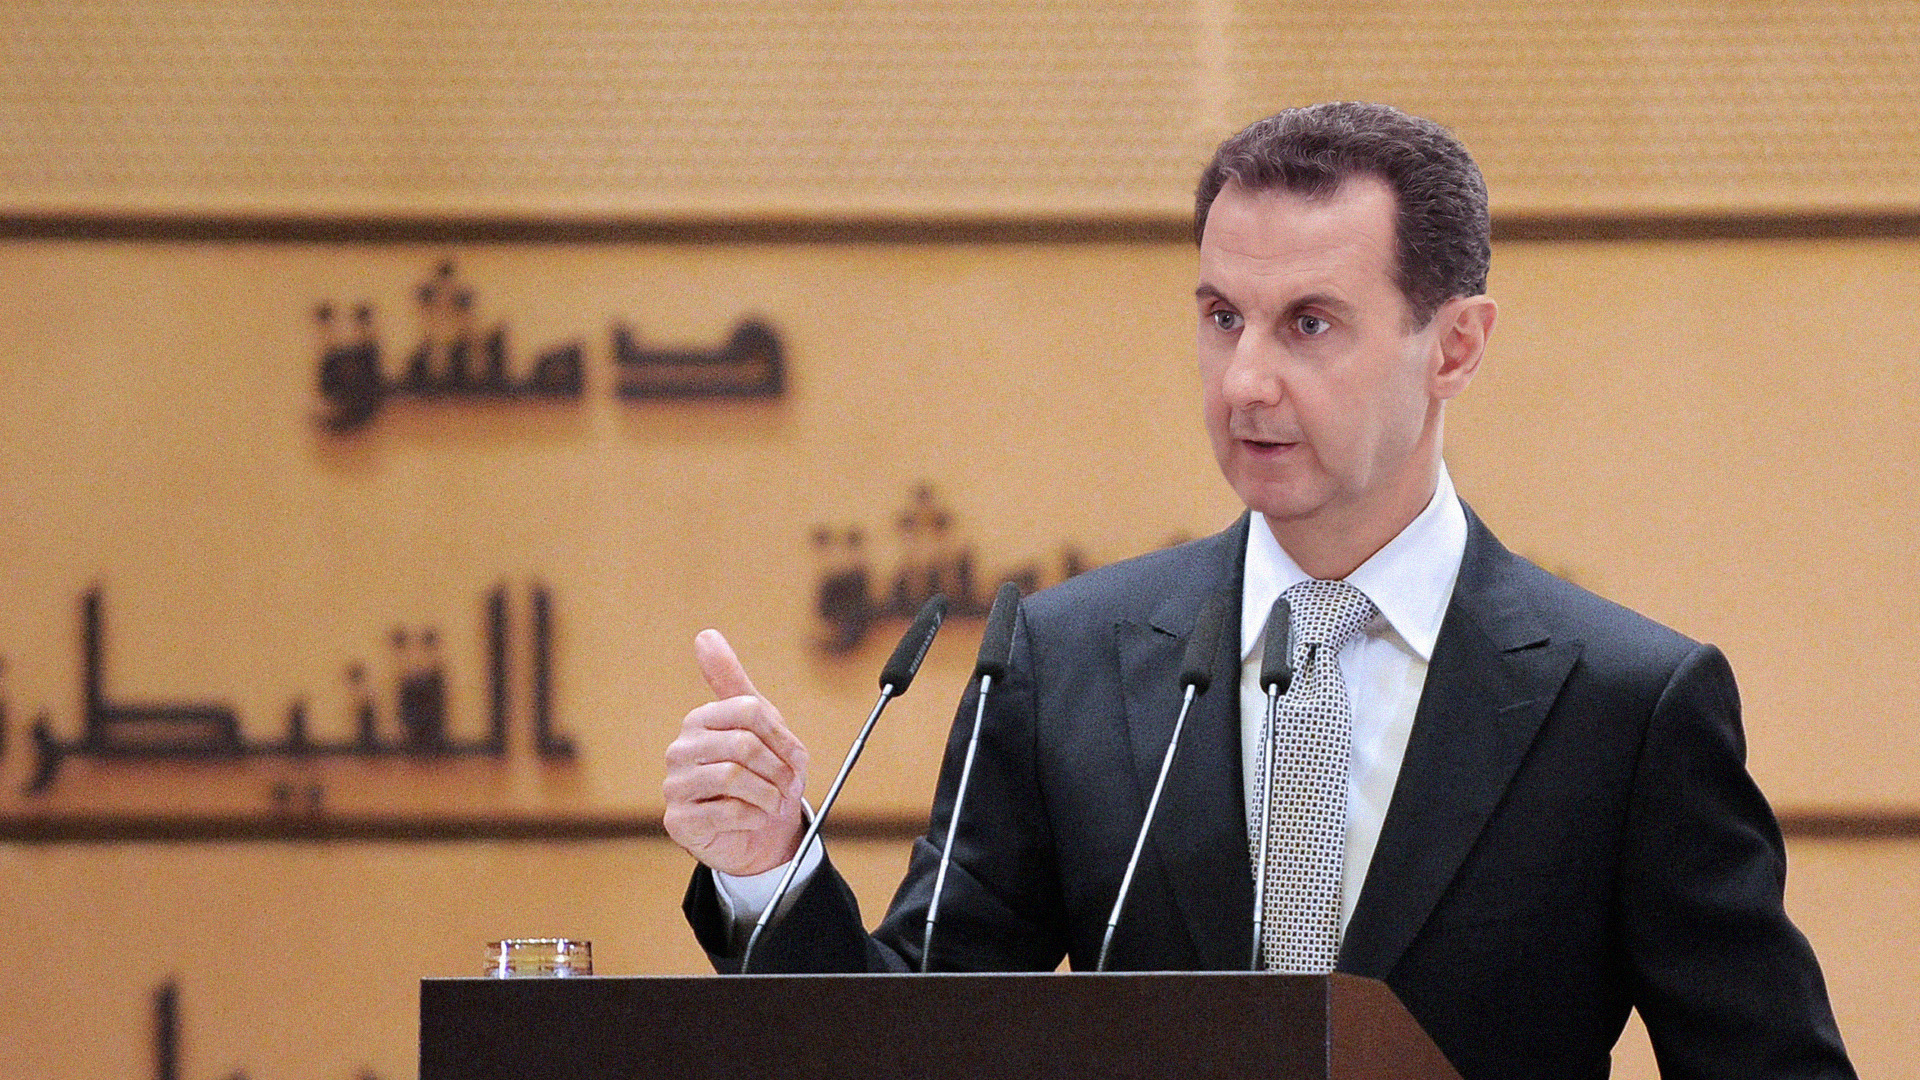 صورة الأسد يوجّه الحكومة بإعادة الحياة إلى طبيعتها ورفع الأسعار فوراً